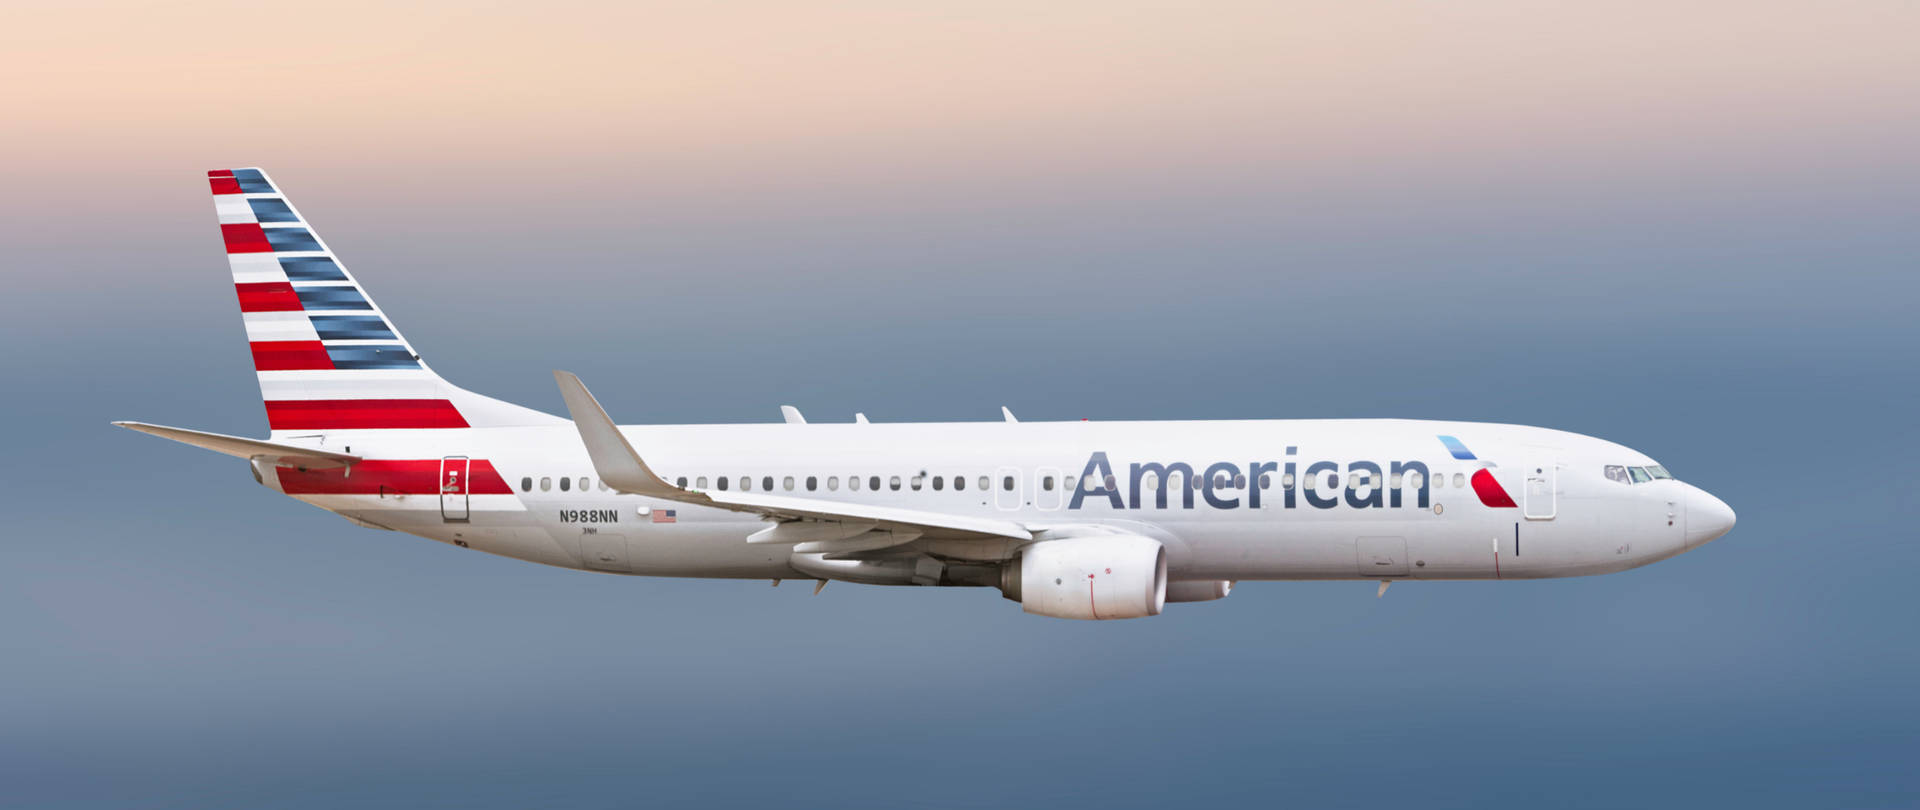 American Airlines N988AL Airbus Wallpaper